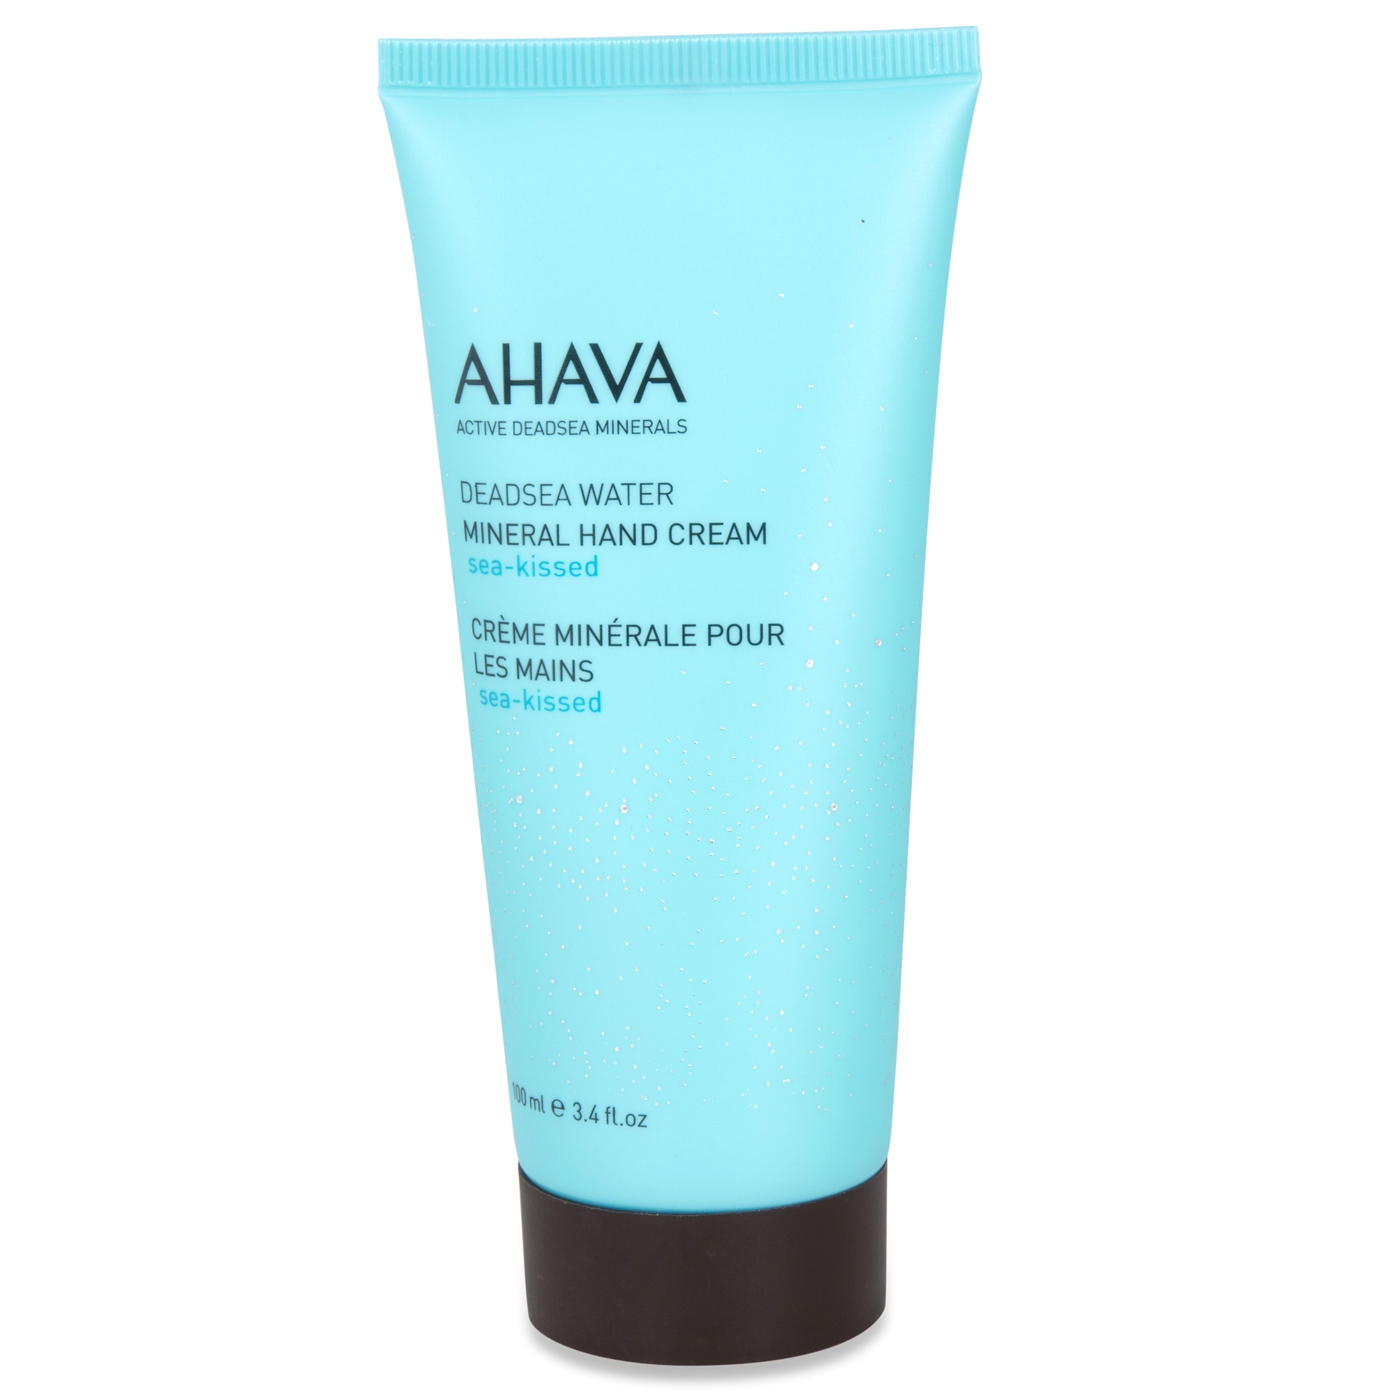 AHAVA Dead Sea Water Mineral Hand Cream - Sea-Kissed - 1